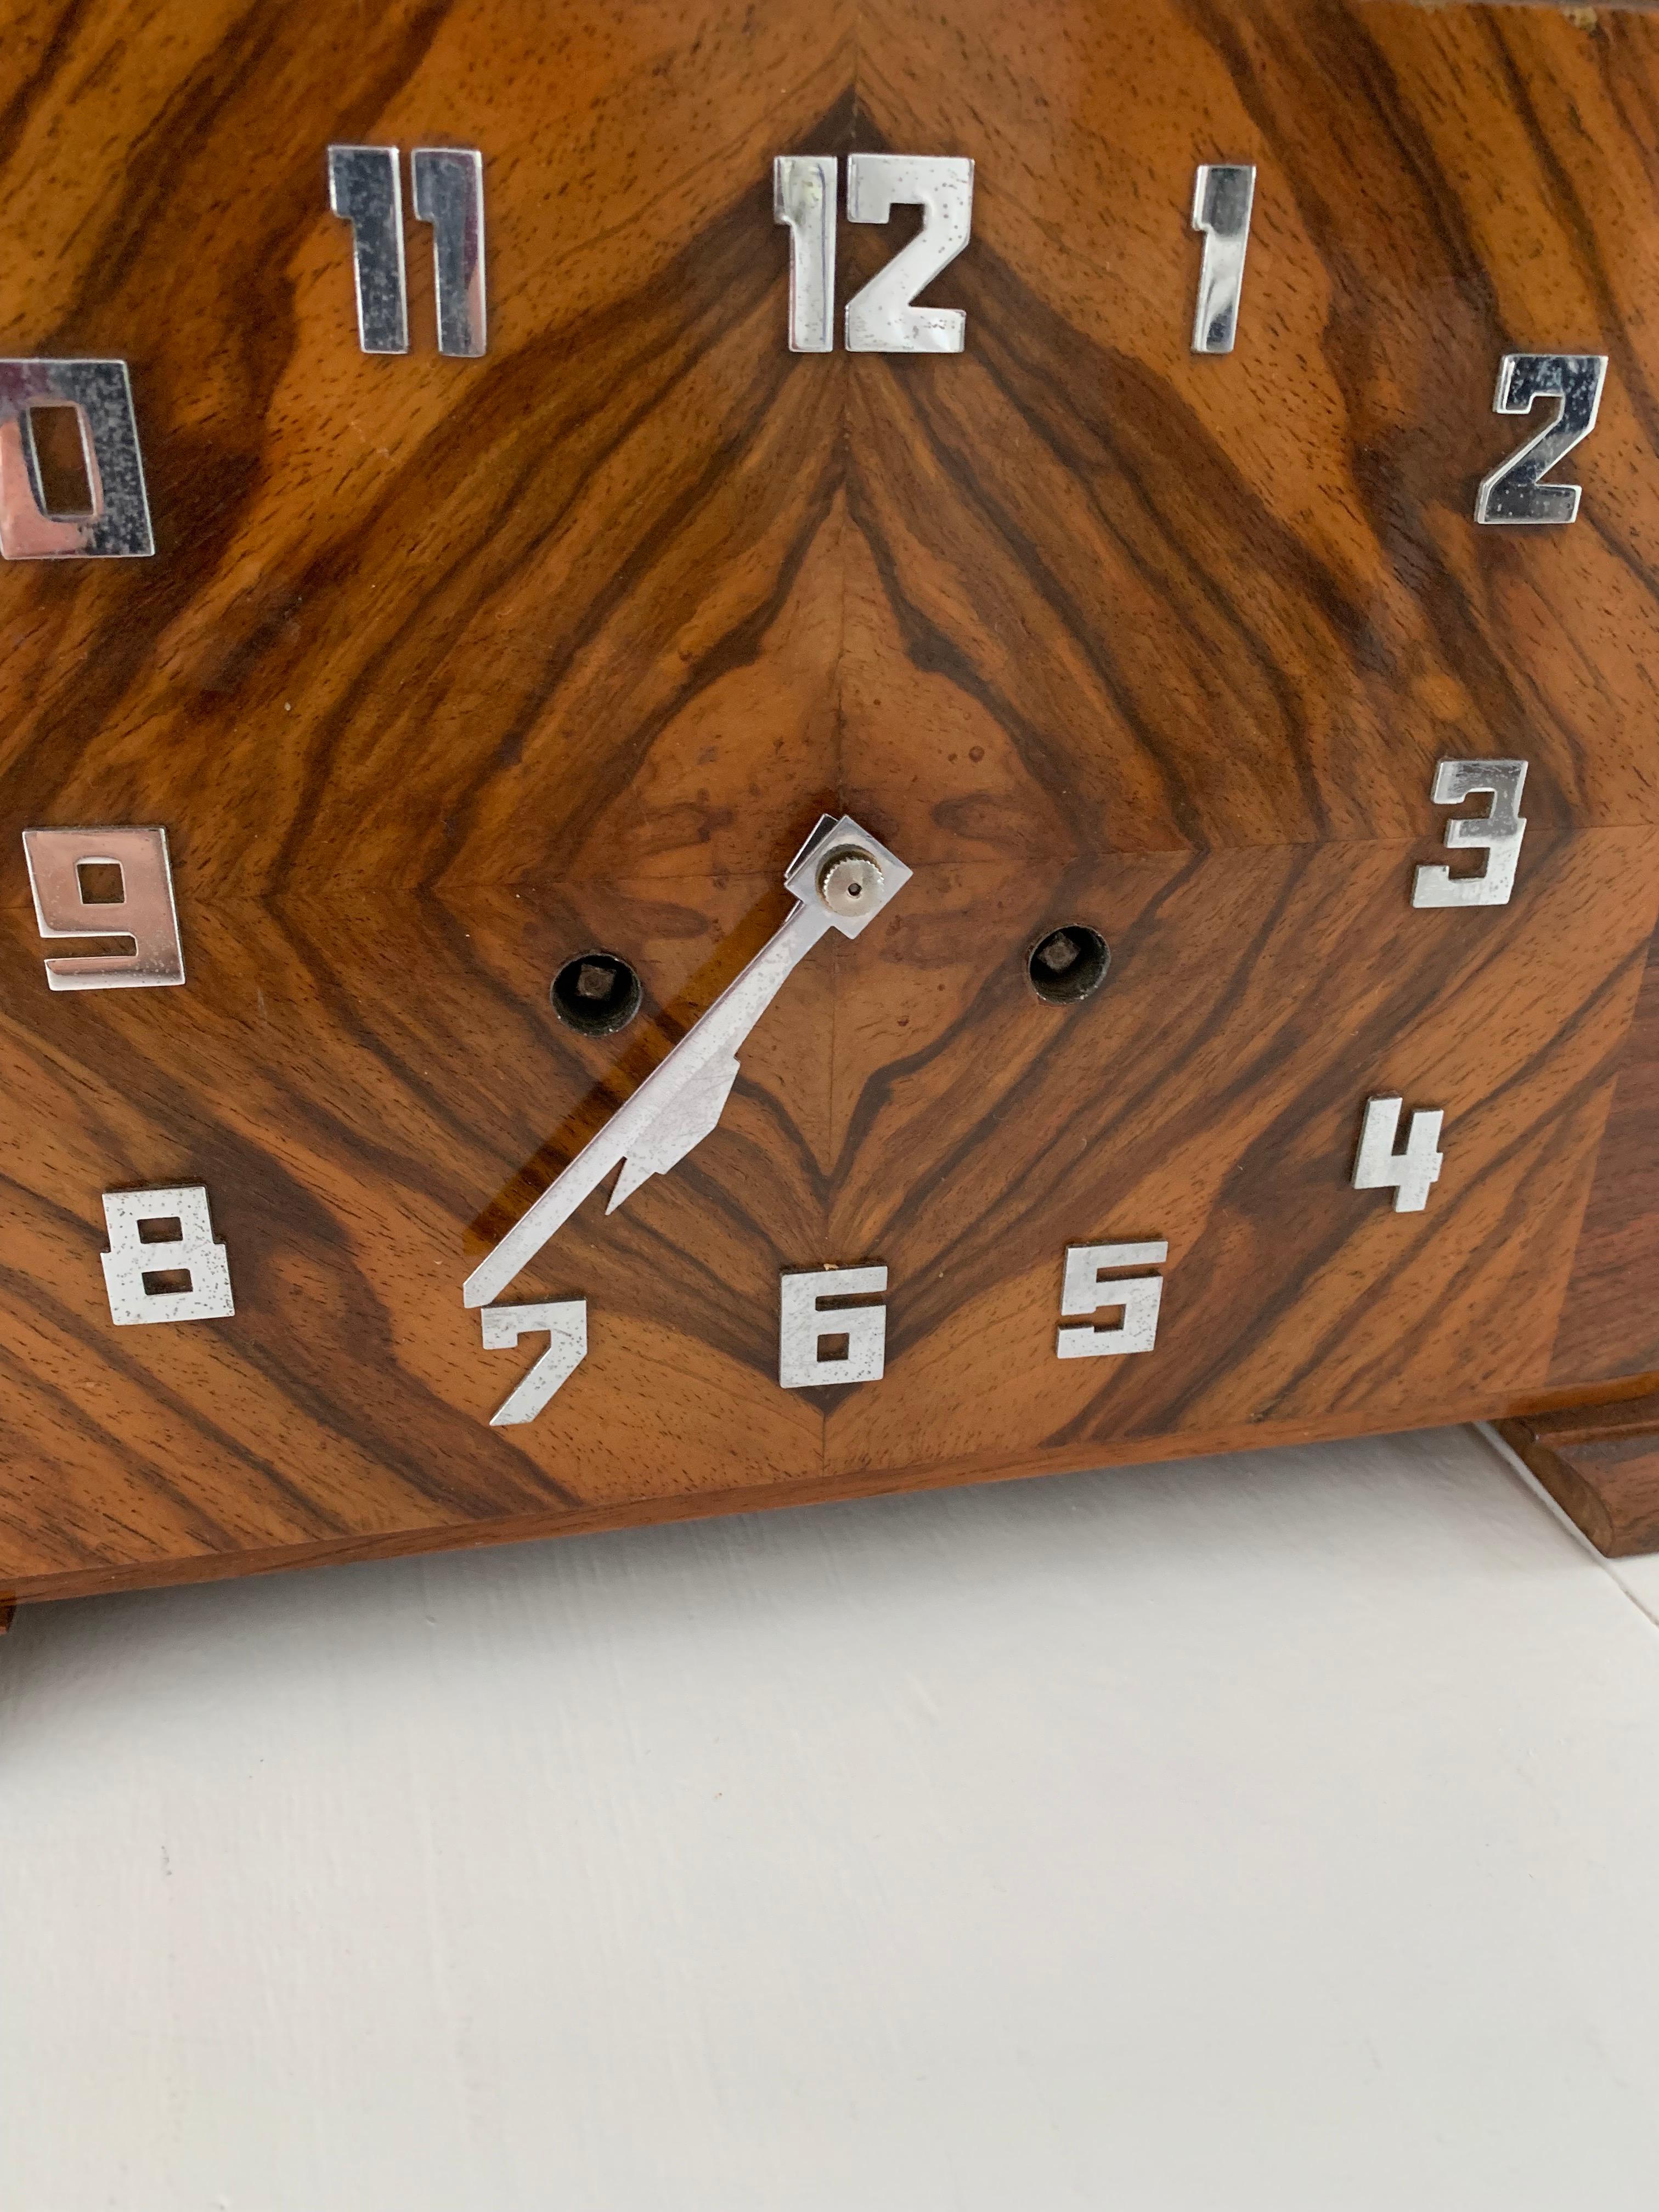 Marvelous Design & Warm Color Burl Walnut Art Deco Mantel Desk or Pendulum Clock 3